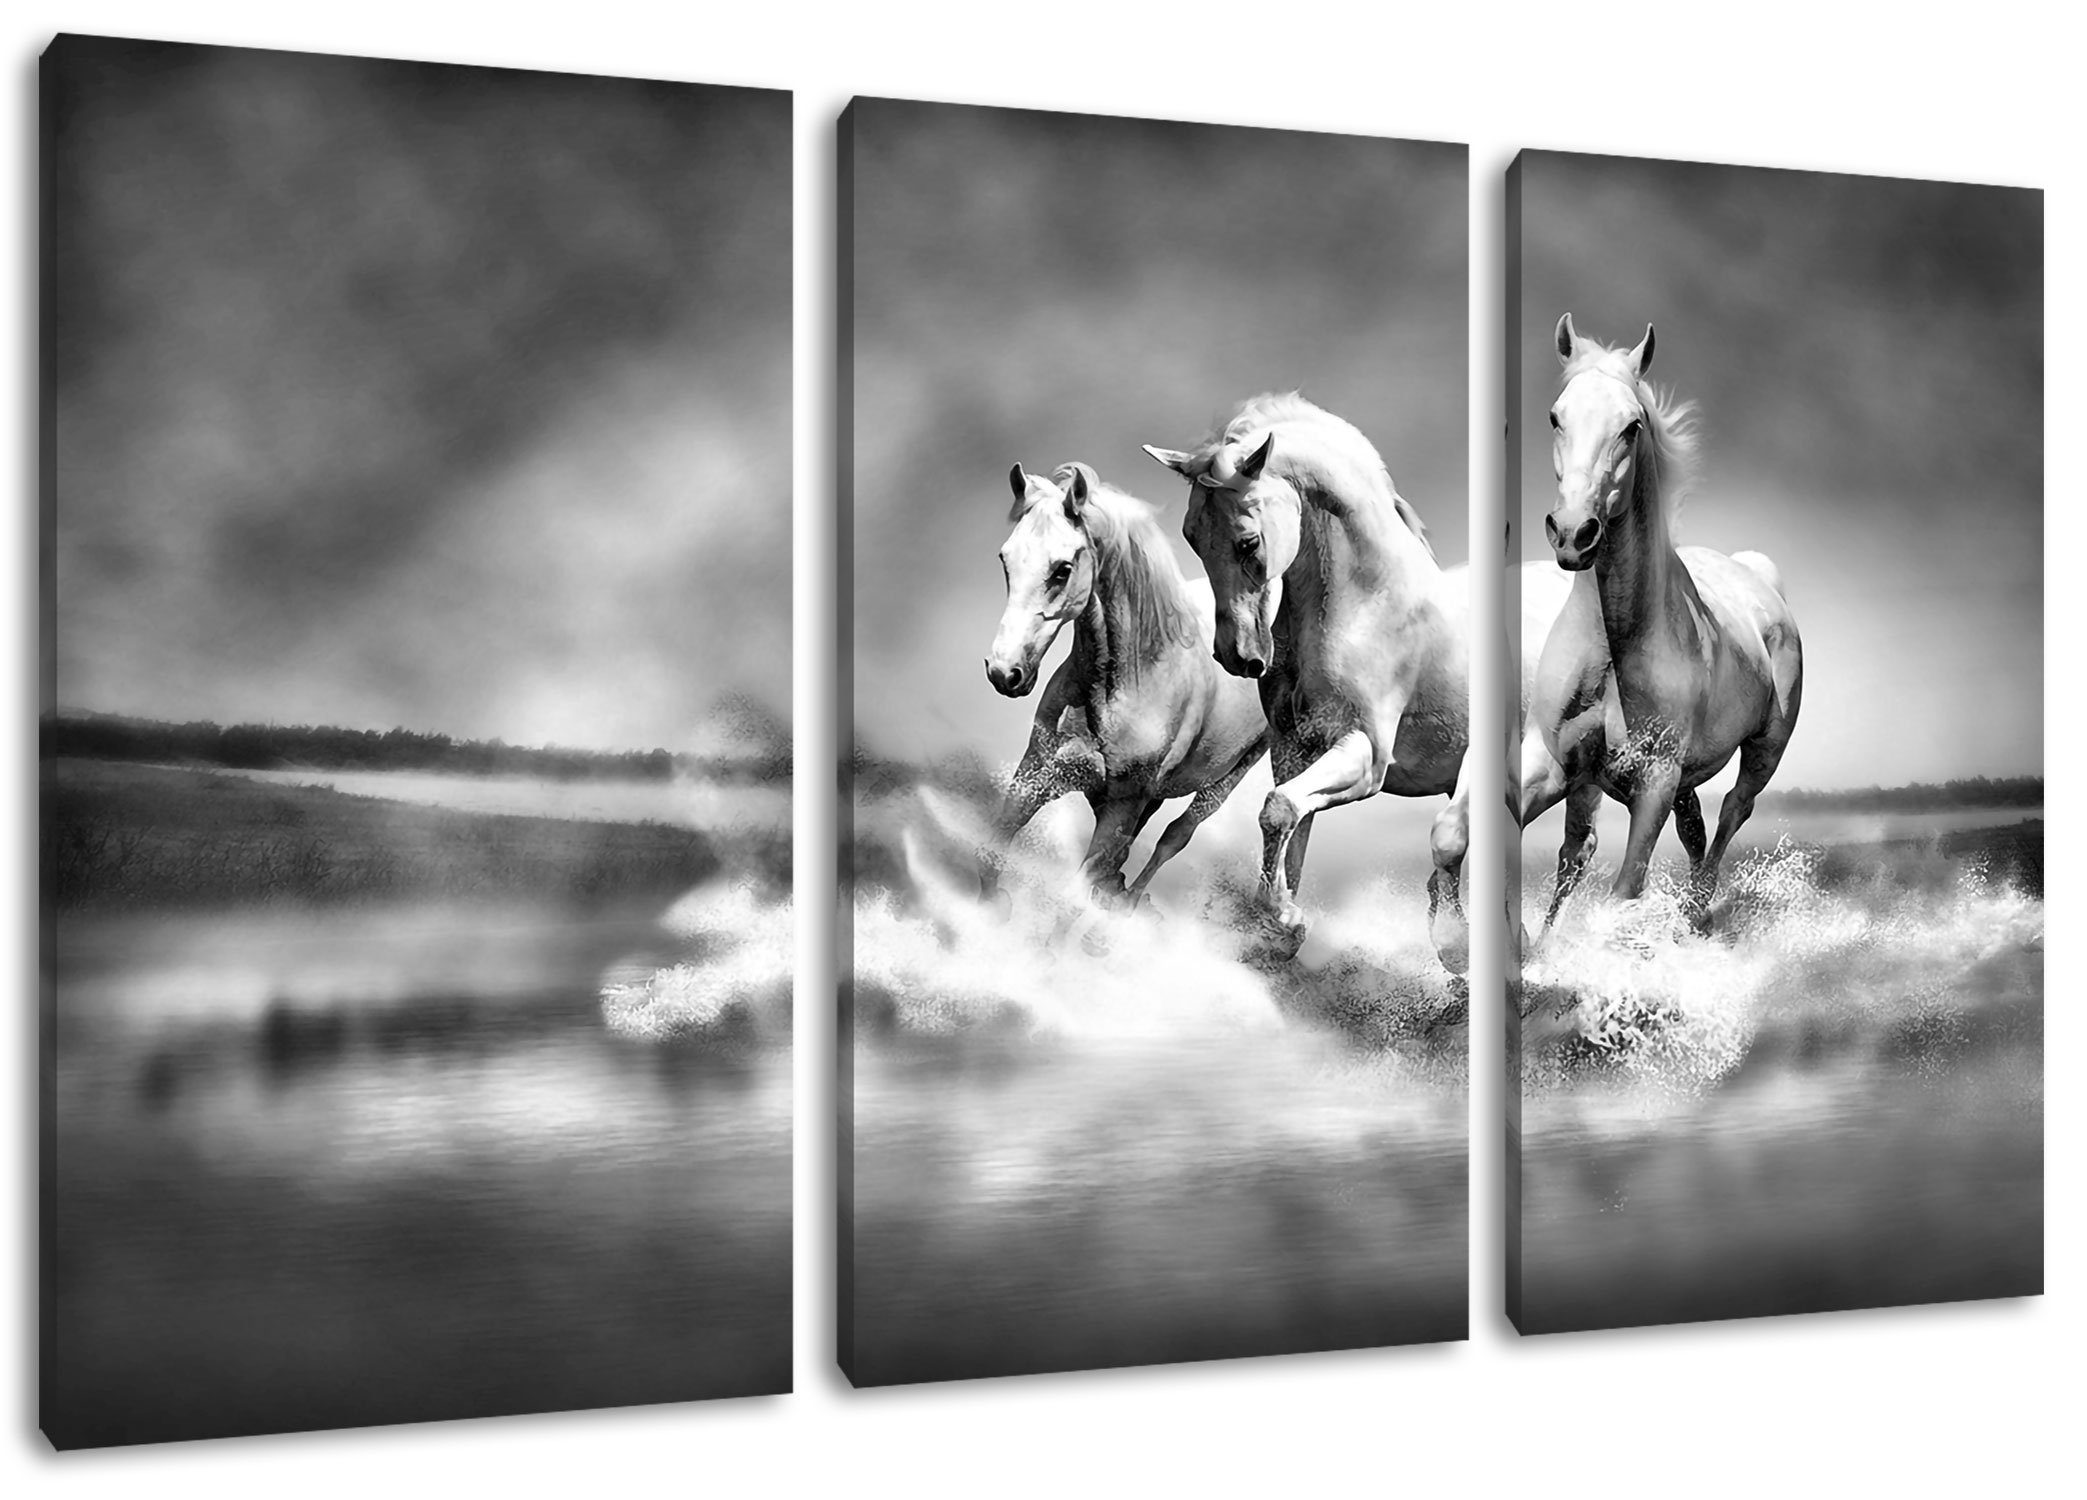 Pixxprint Leinwandbild Pferde rennen Zackenaufhänger bespannt, Wasser (1 (120x80cm) 3Teiler fertig Leinwandbild inkl. Wasser, Pferde St), rennen im im